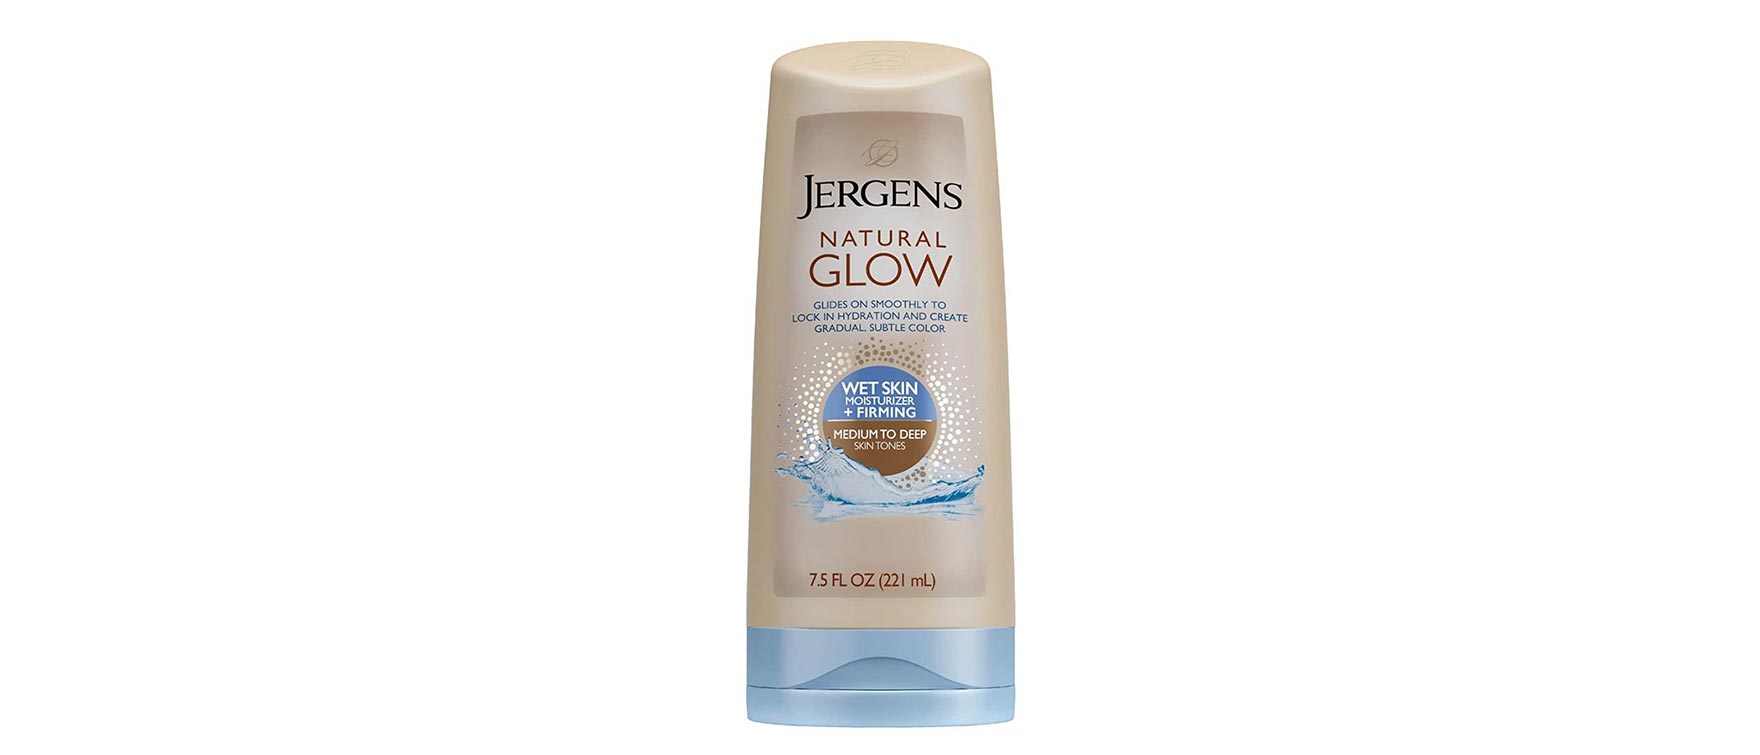 2. Jergens Natural Glow Wet Skin Moisturizer